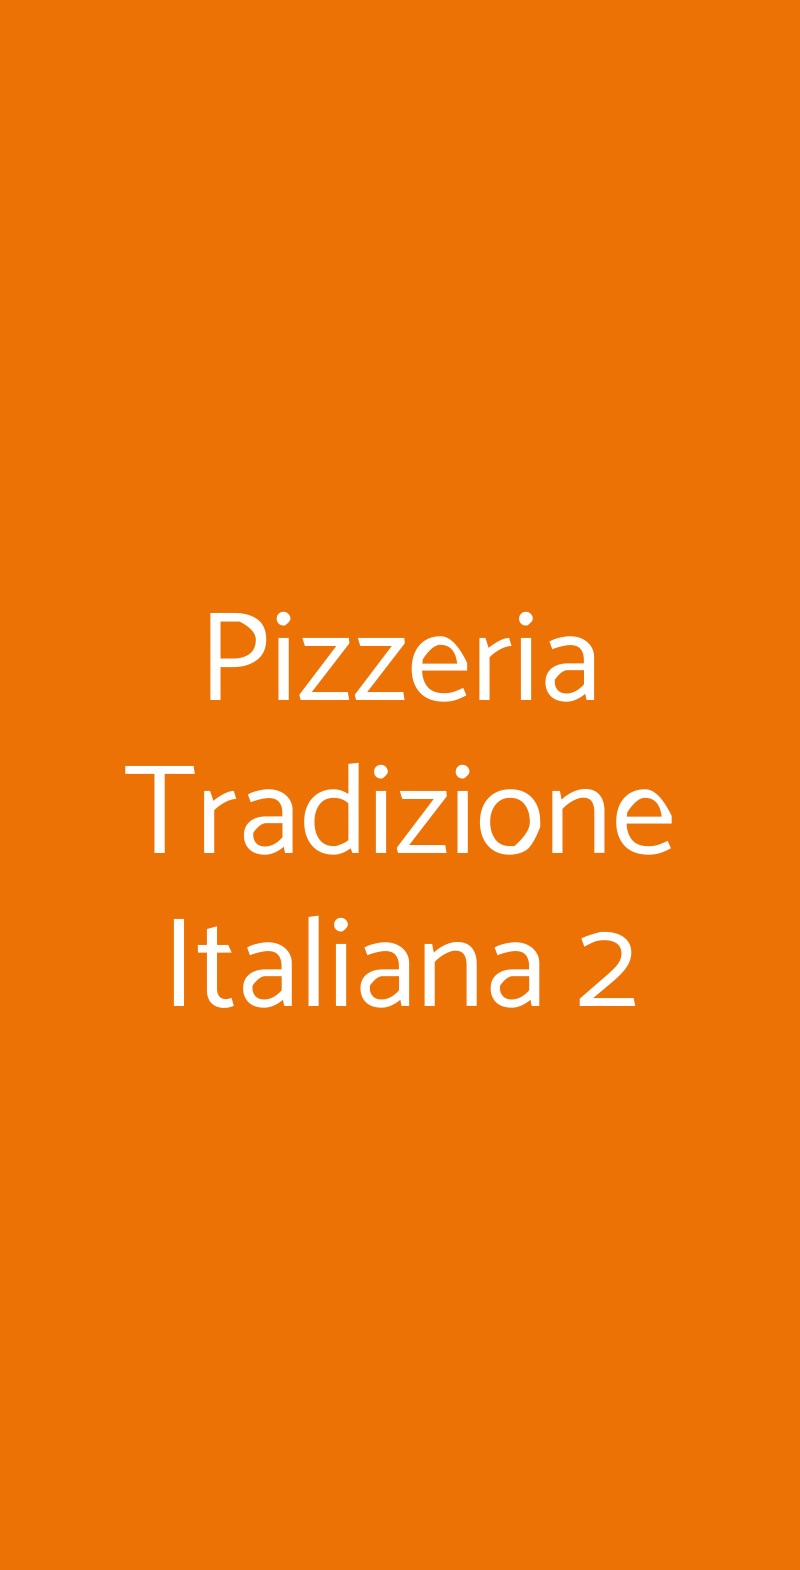 Pizzeria Tradizione Italiana 2 Roma menù 1 pagina